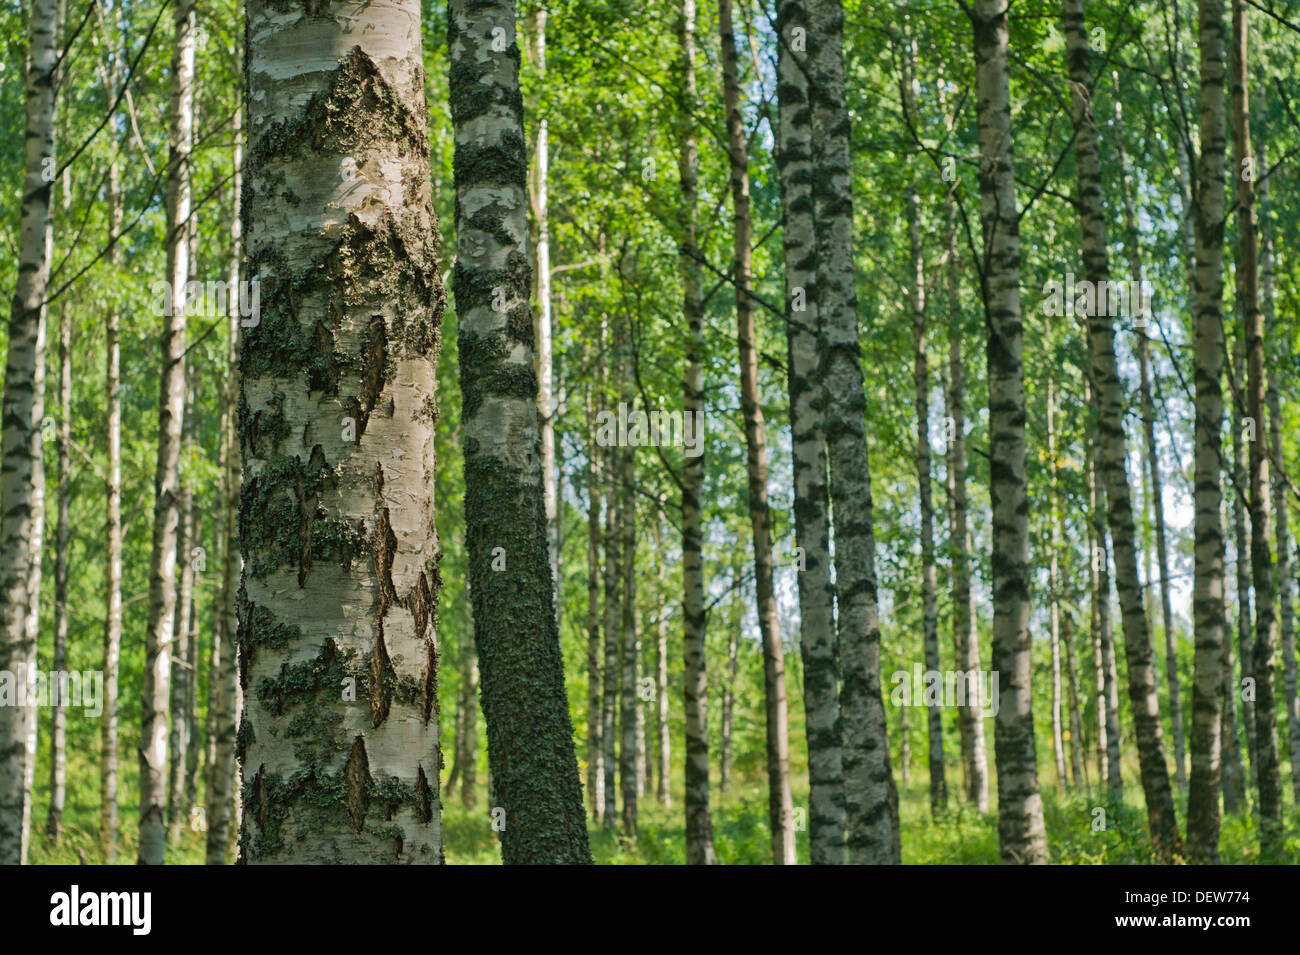 Finnish Birch Forest in Summer Stock Photo